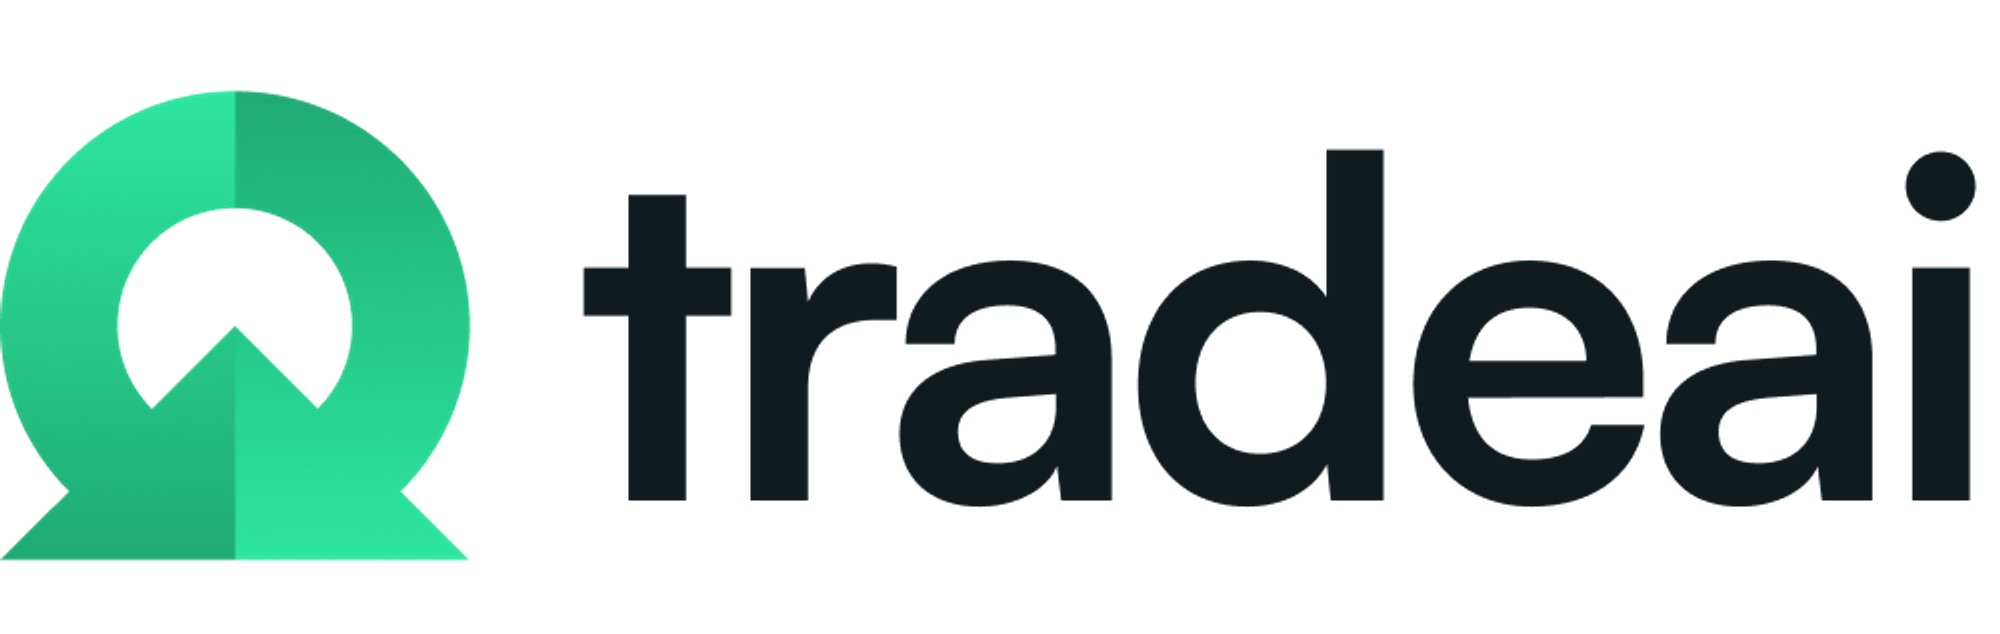 Modern logo design for tradeai.io